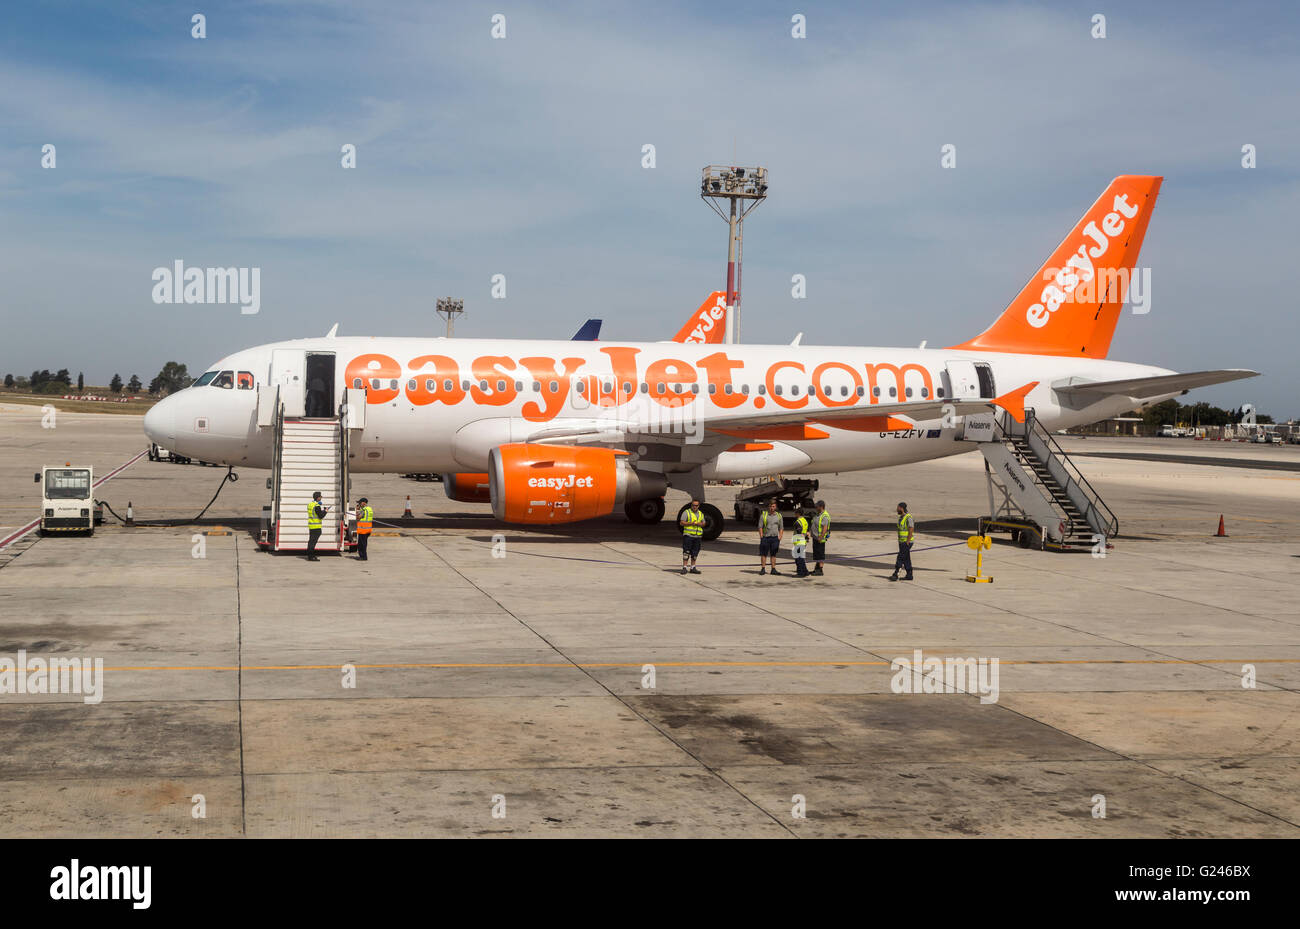 Piano di Easyjet e il personale a terra in aeroporto, Malta Foto Stock